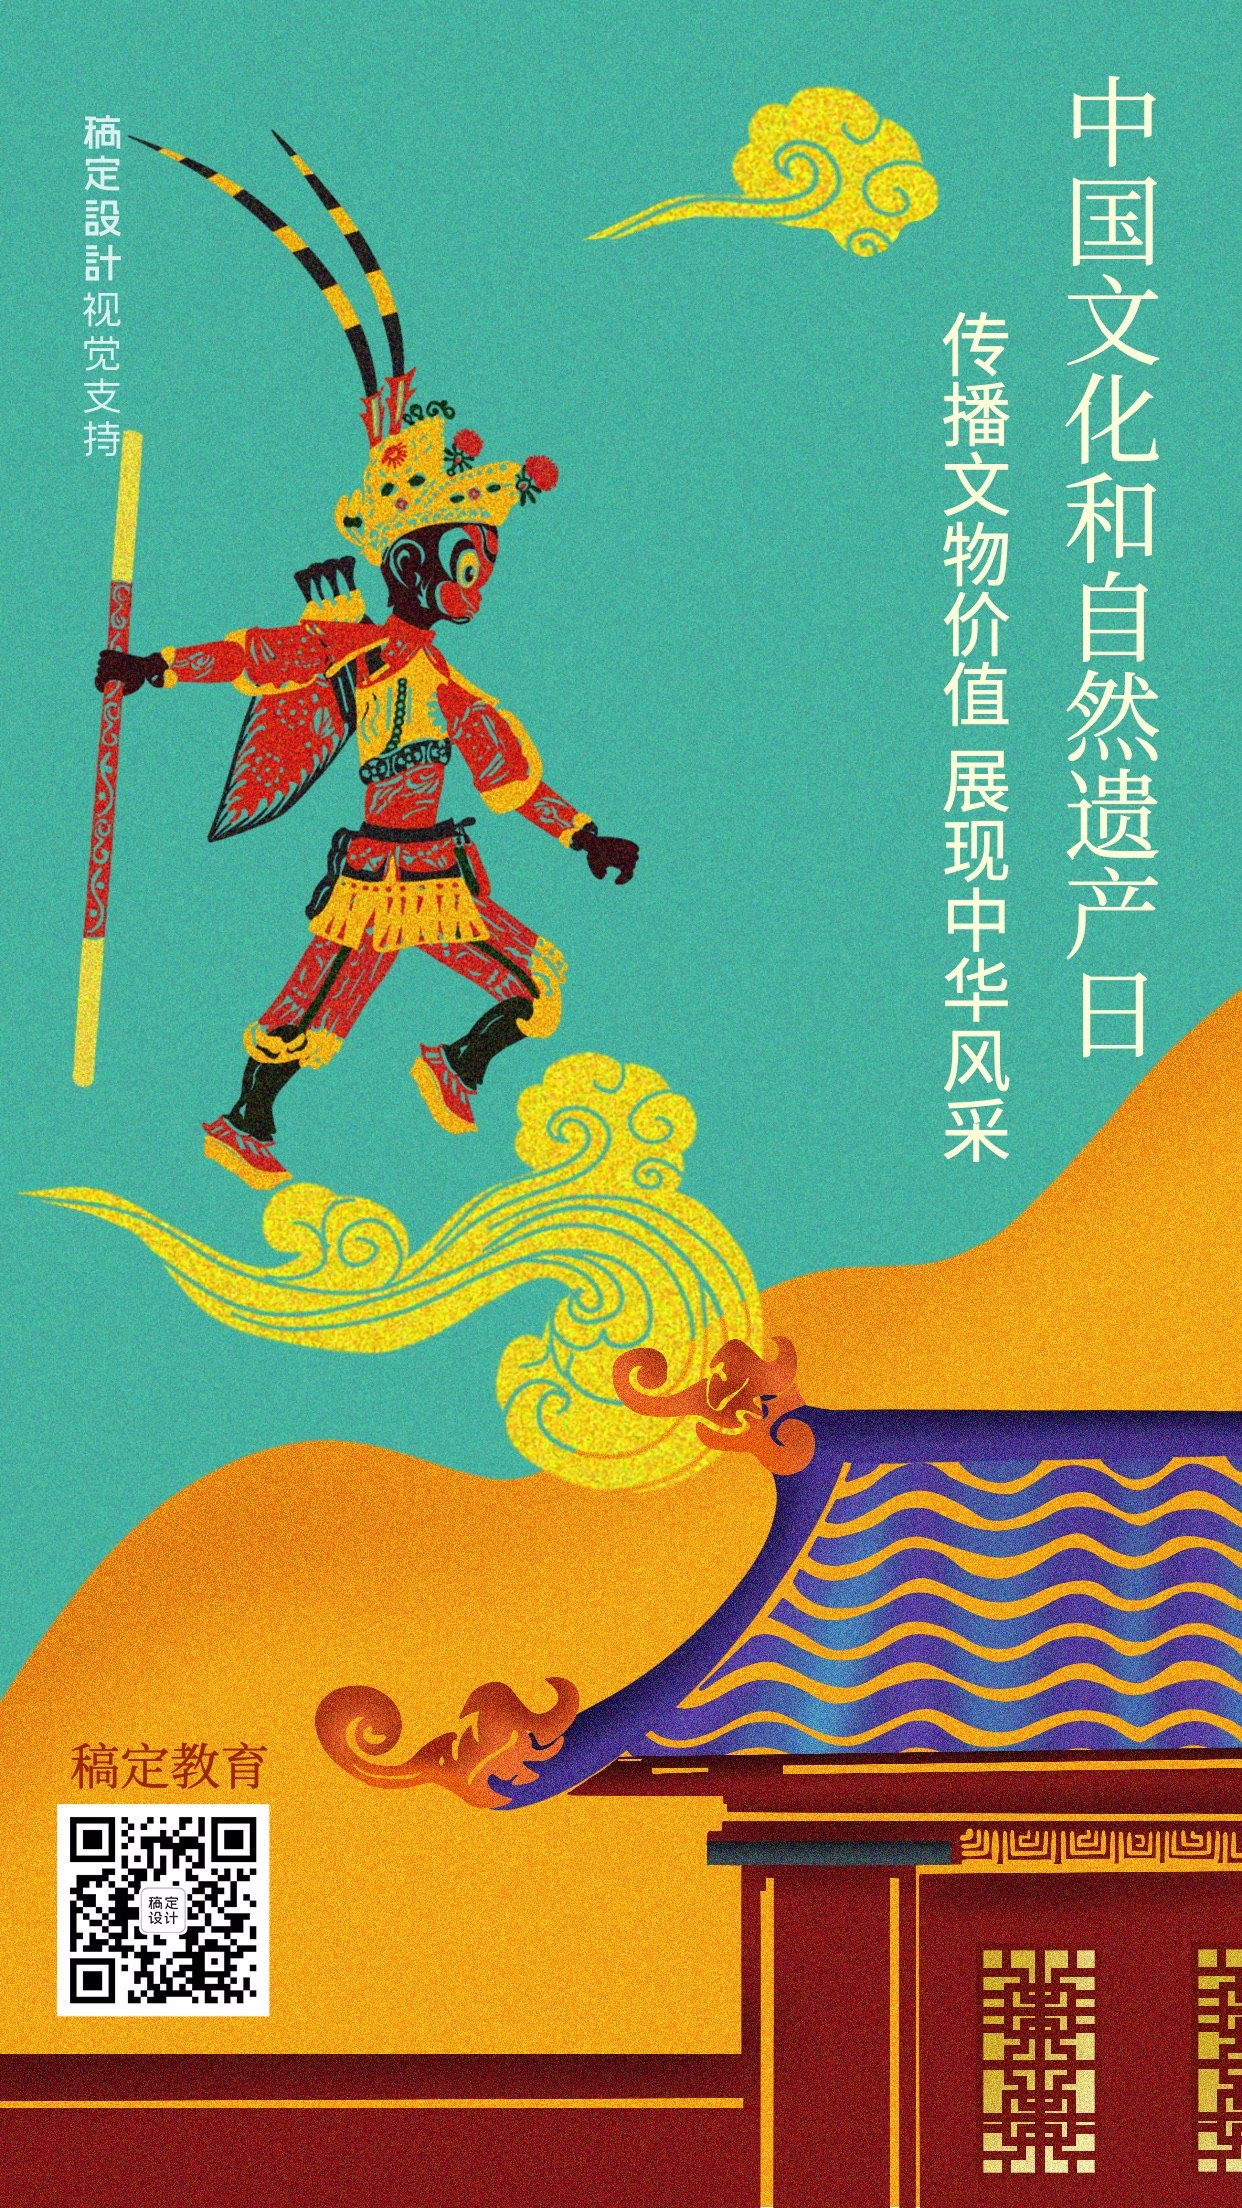 非遗文化遗产日中国风祝福宣传海报预览效果